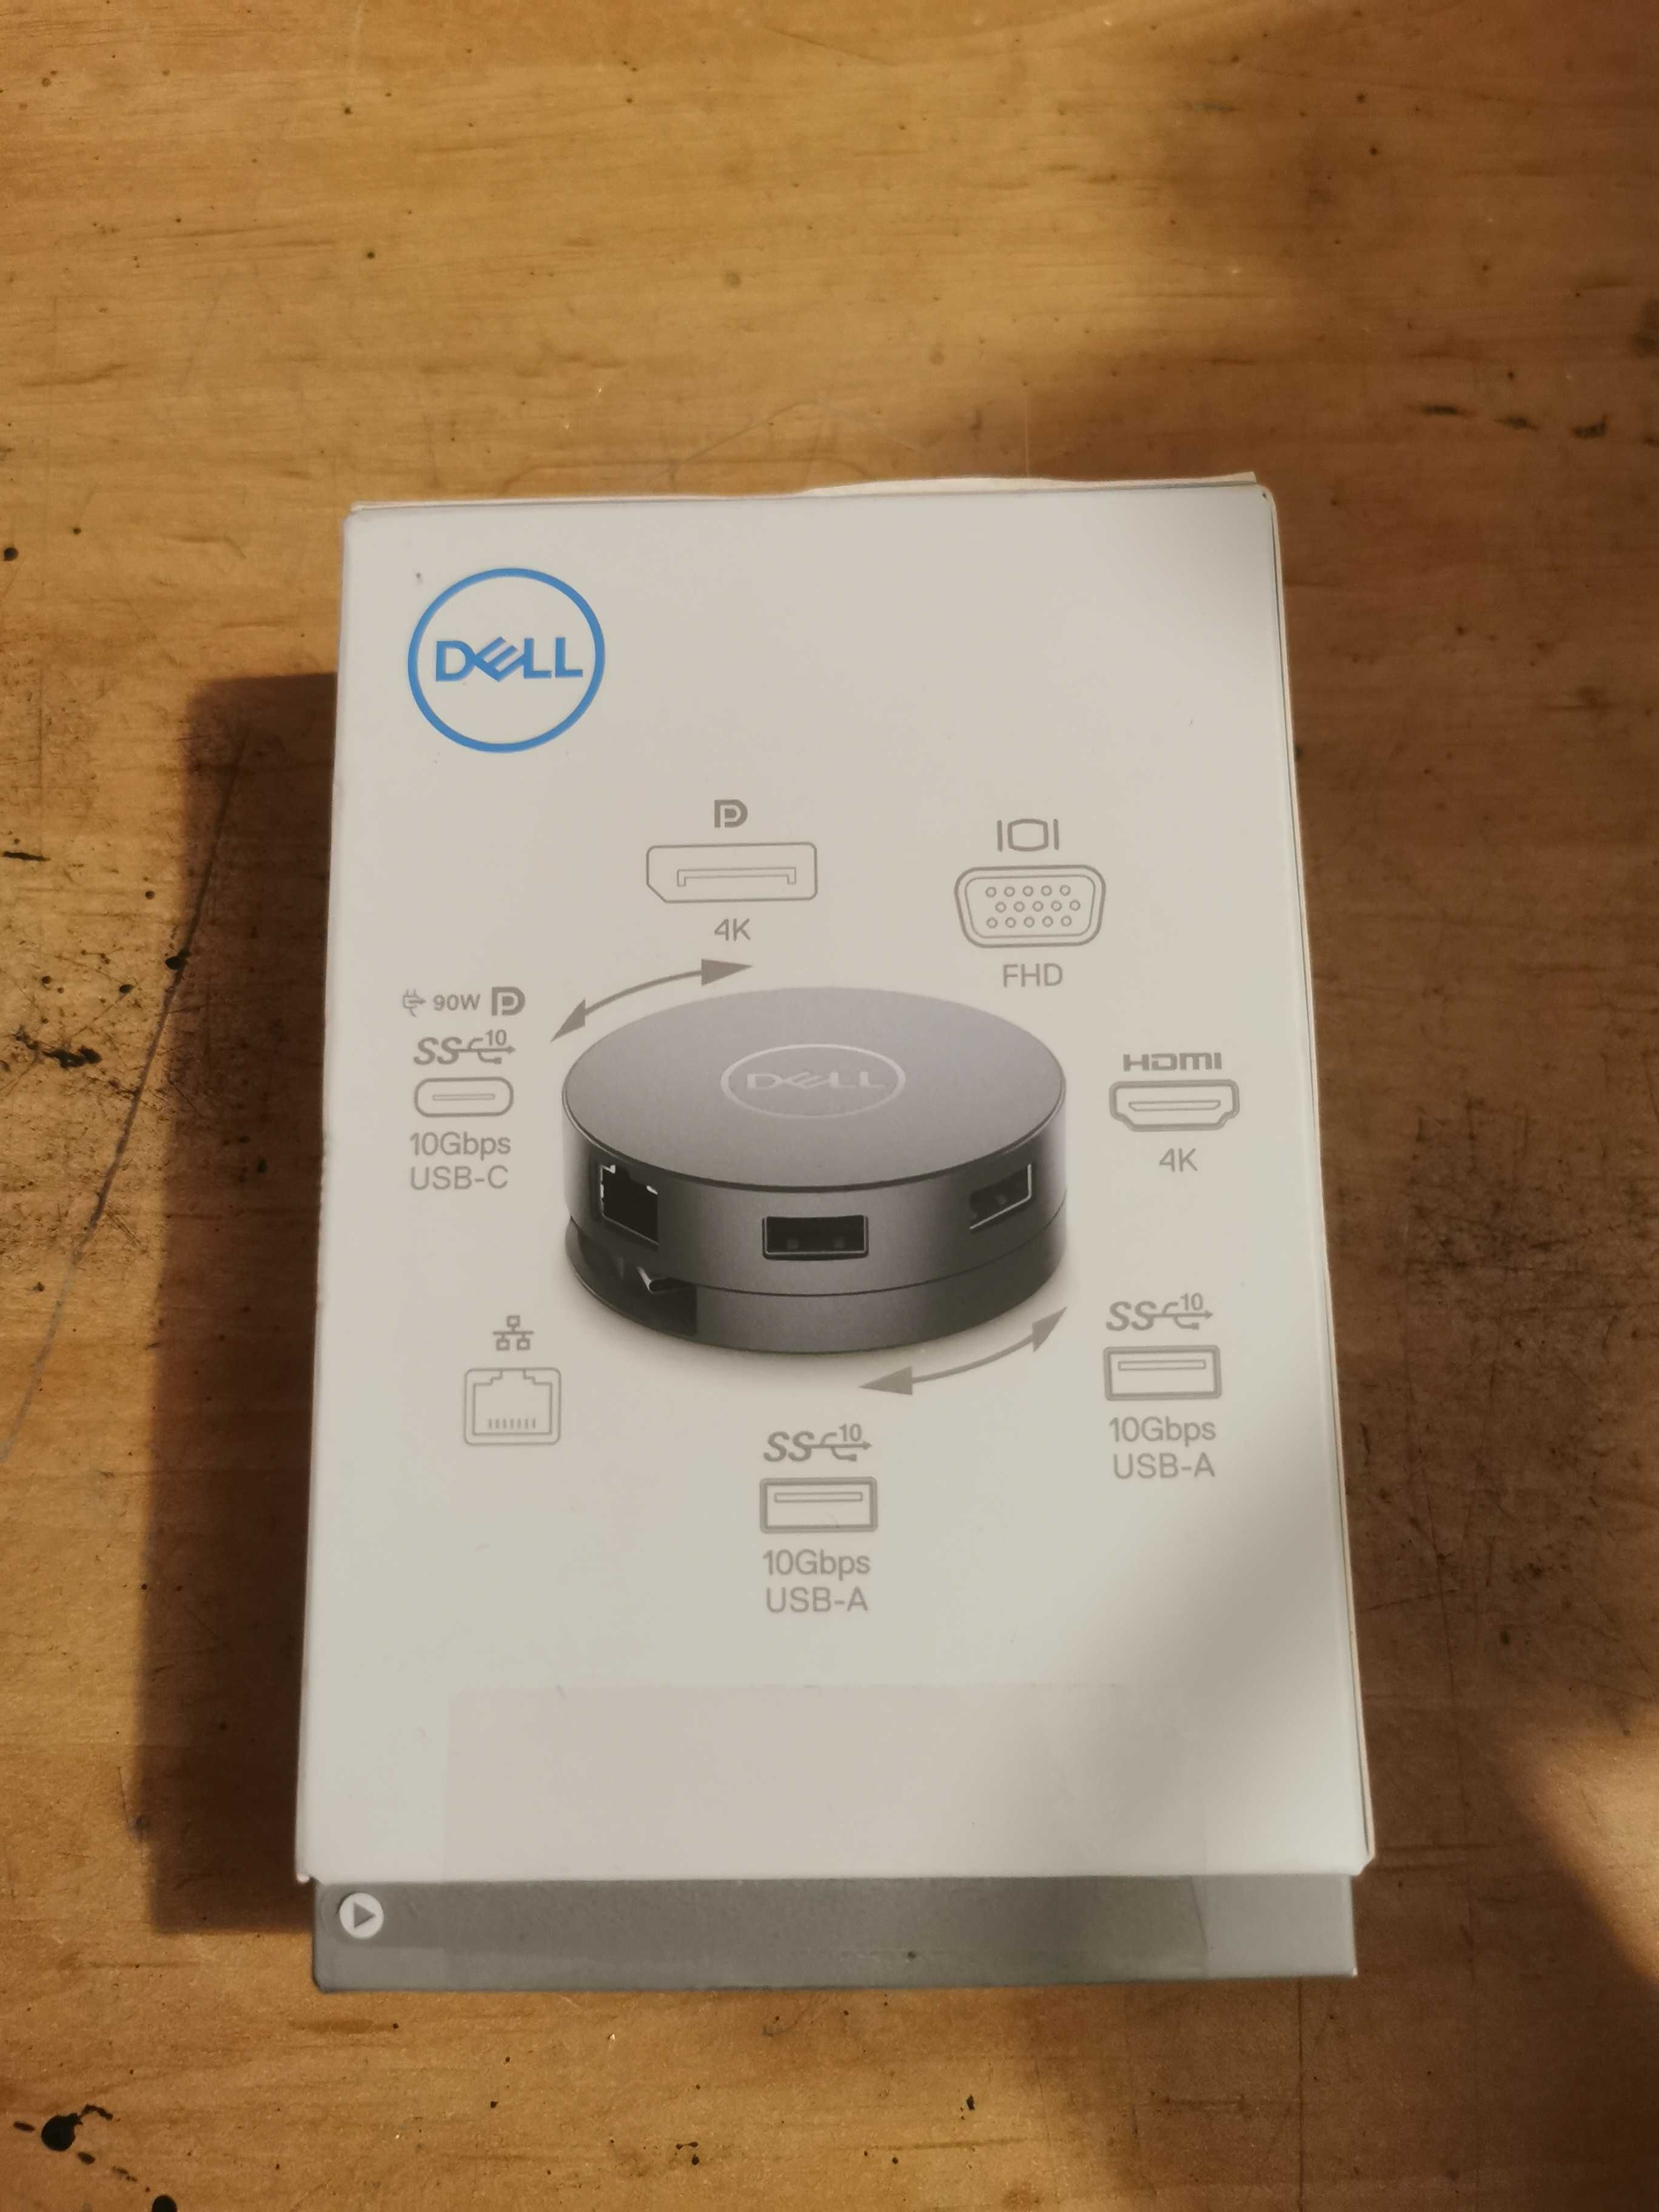 Dell 7-in-1 USBC Multiport Adapter DA310 mobilna stacja dokująca